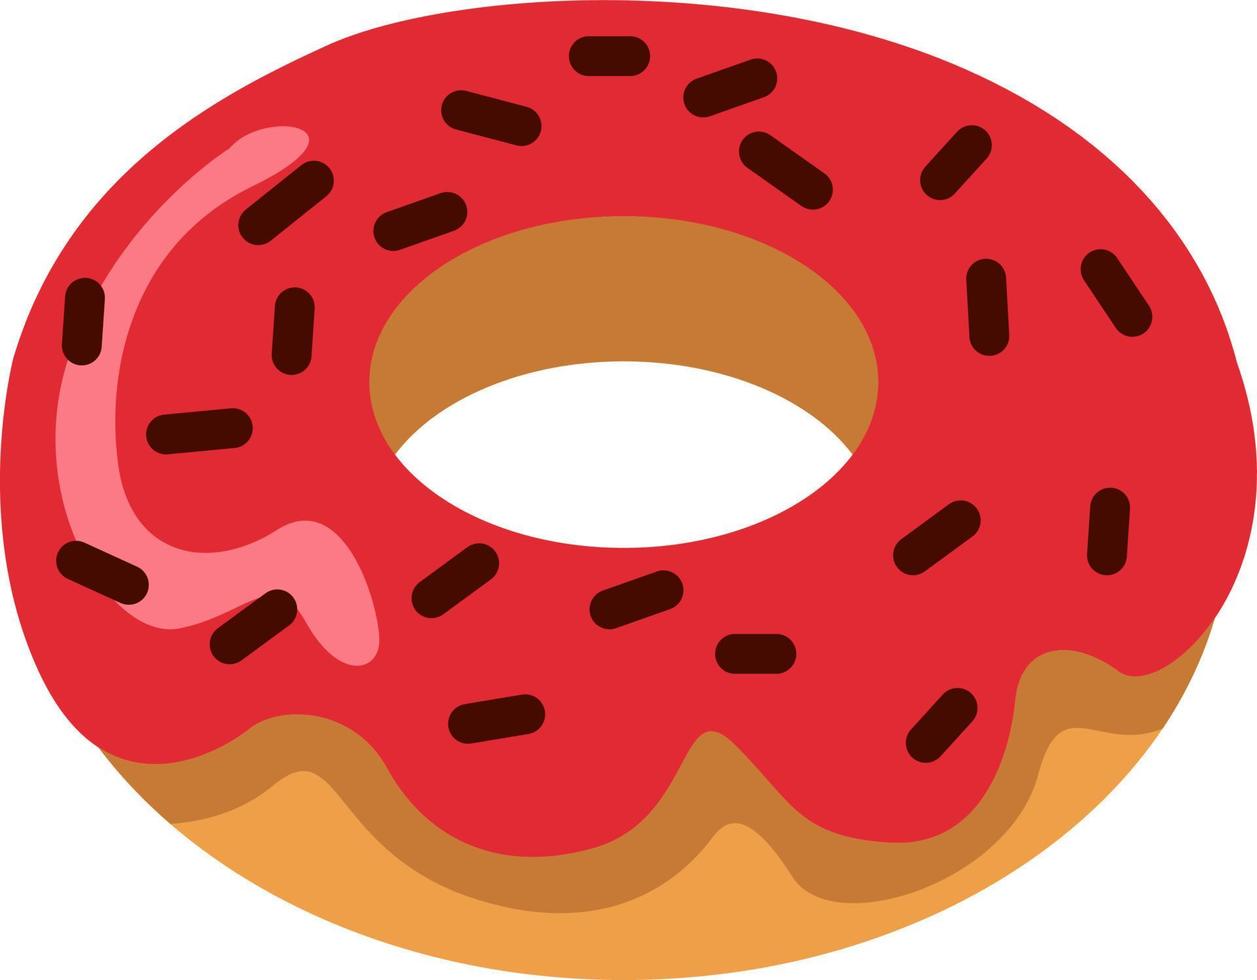 Donut con glaseado de fresa, ilustración, vector sobre un fondo blanco.